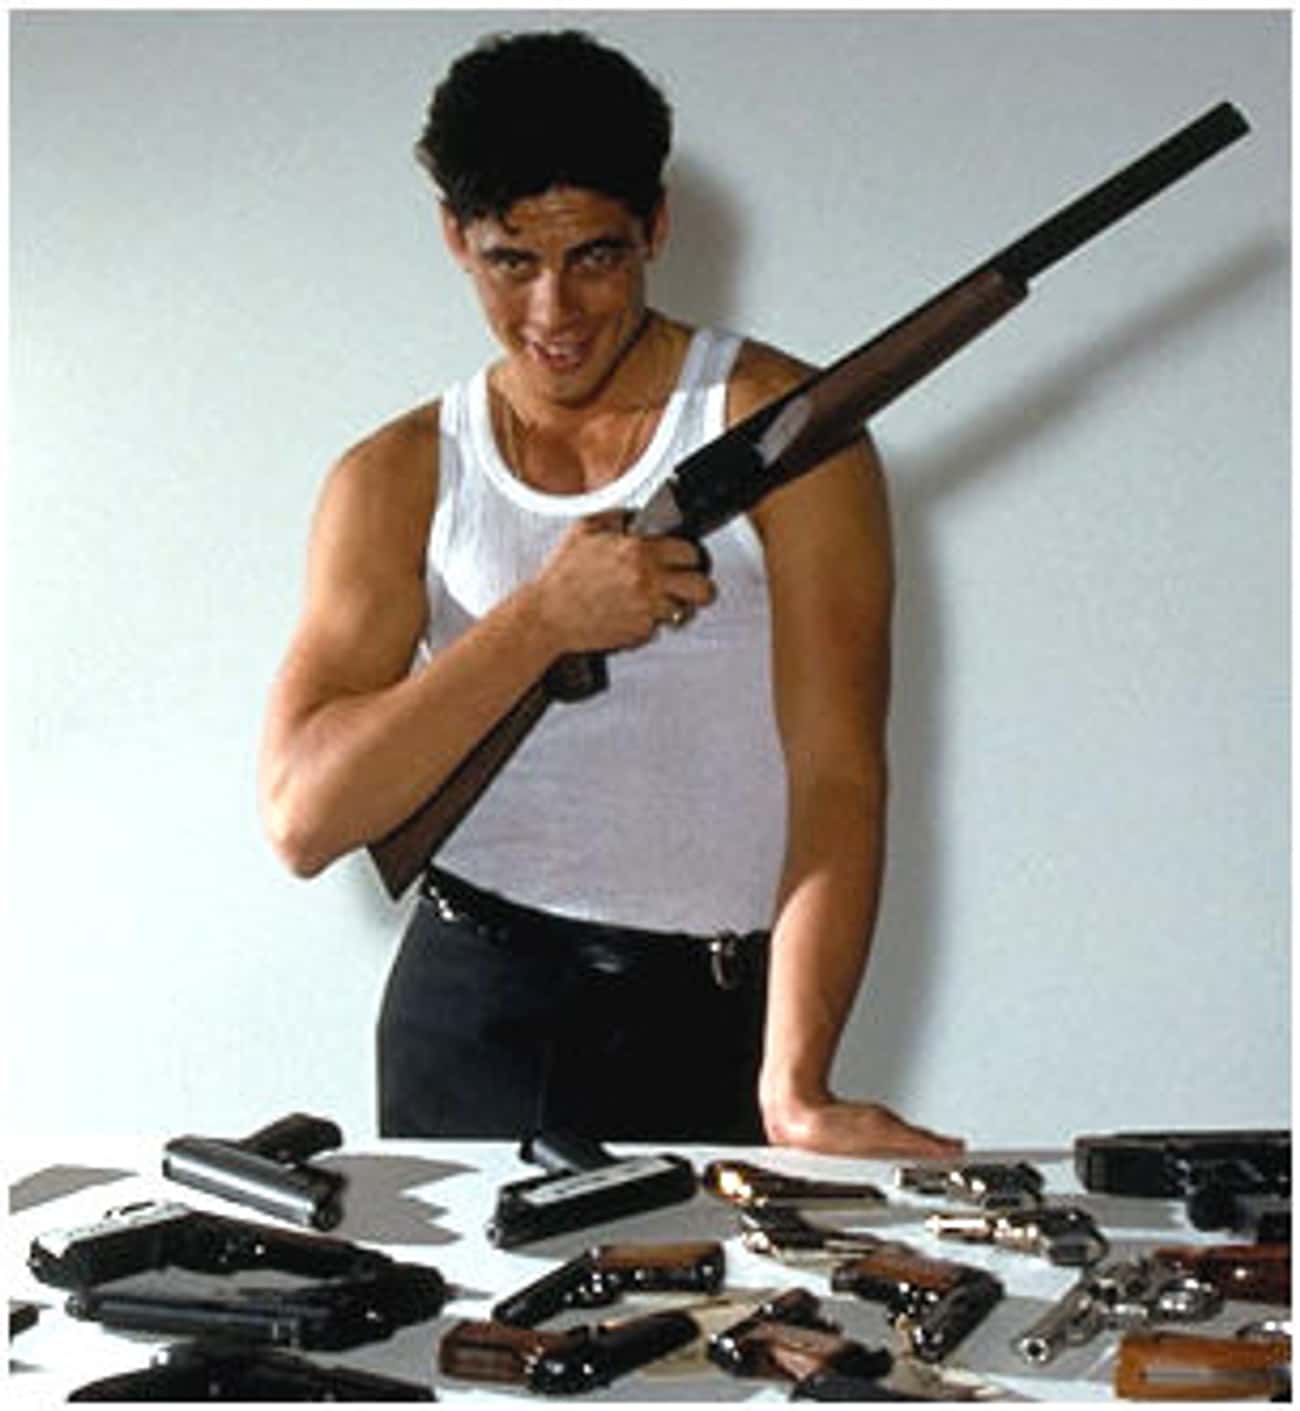 Young Benicio Del Toro in White Tank Top with Guns